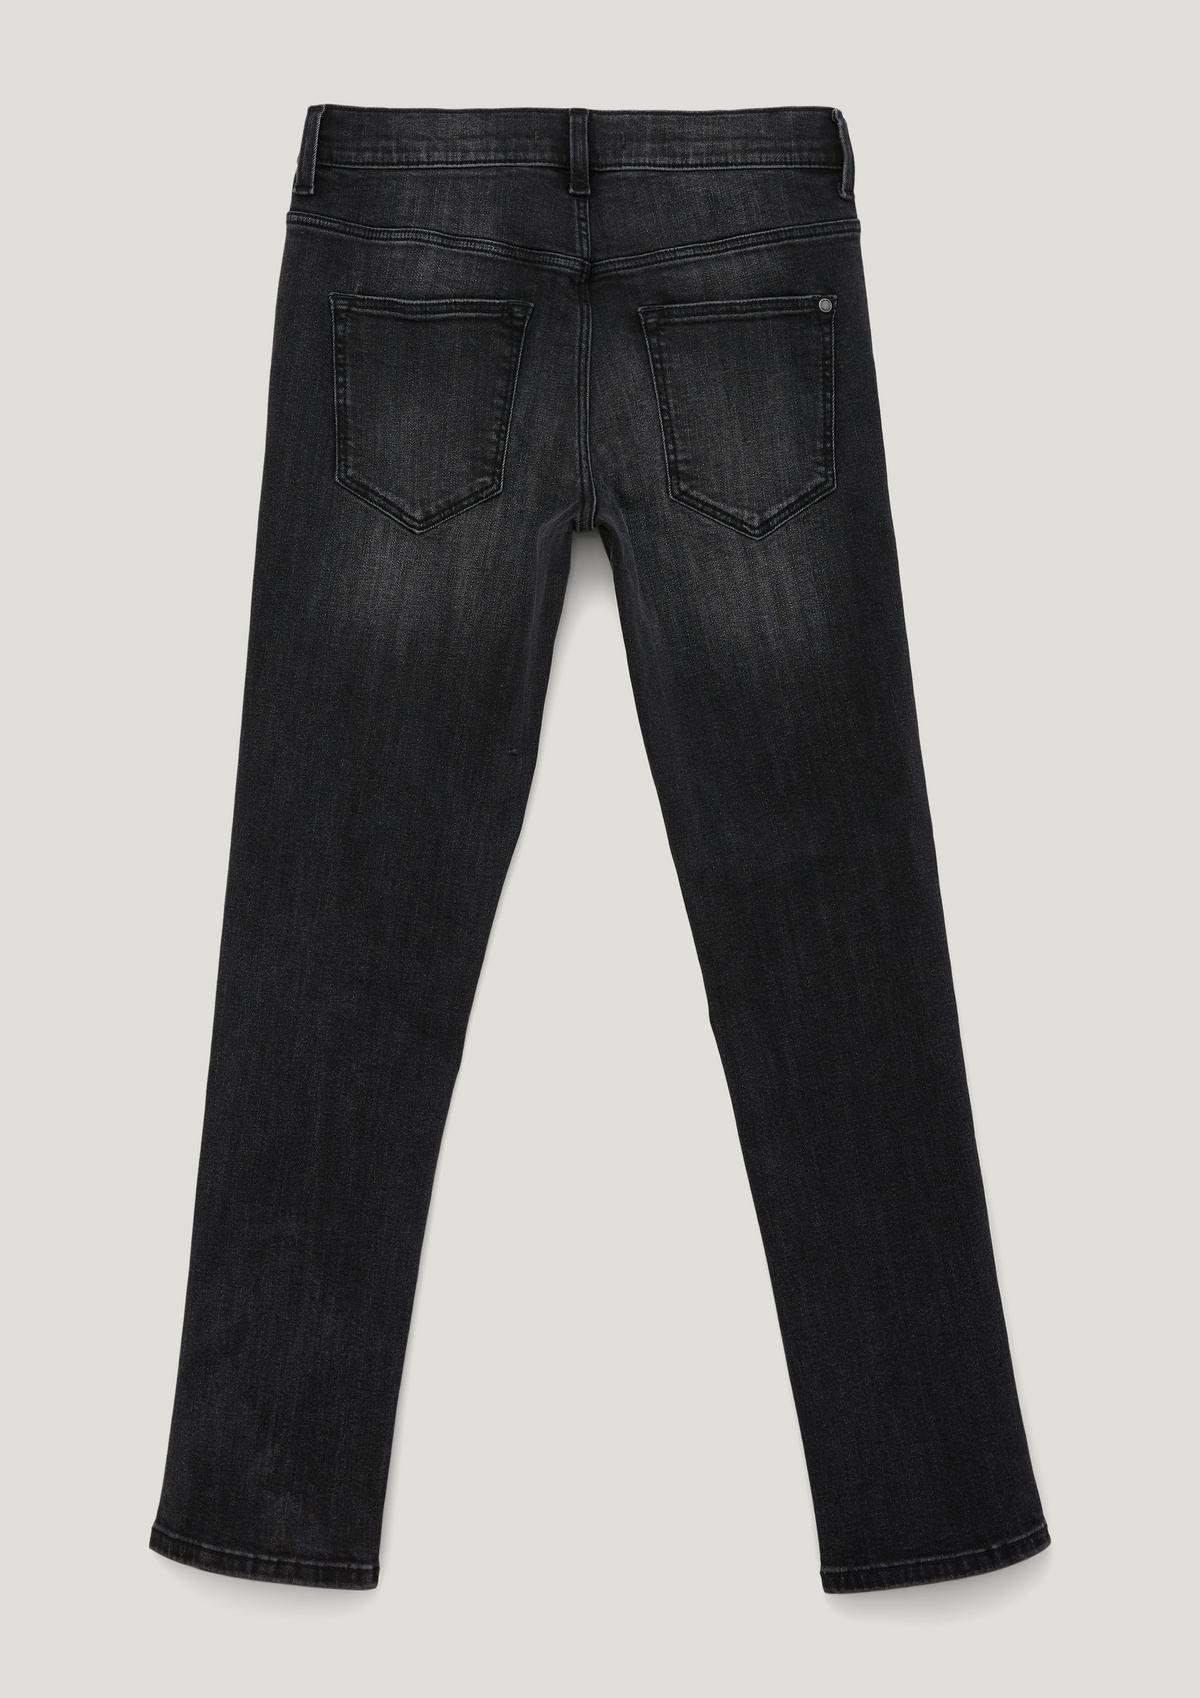 s.Oliver Regular: džíny s obnošeným vzhledem